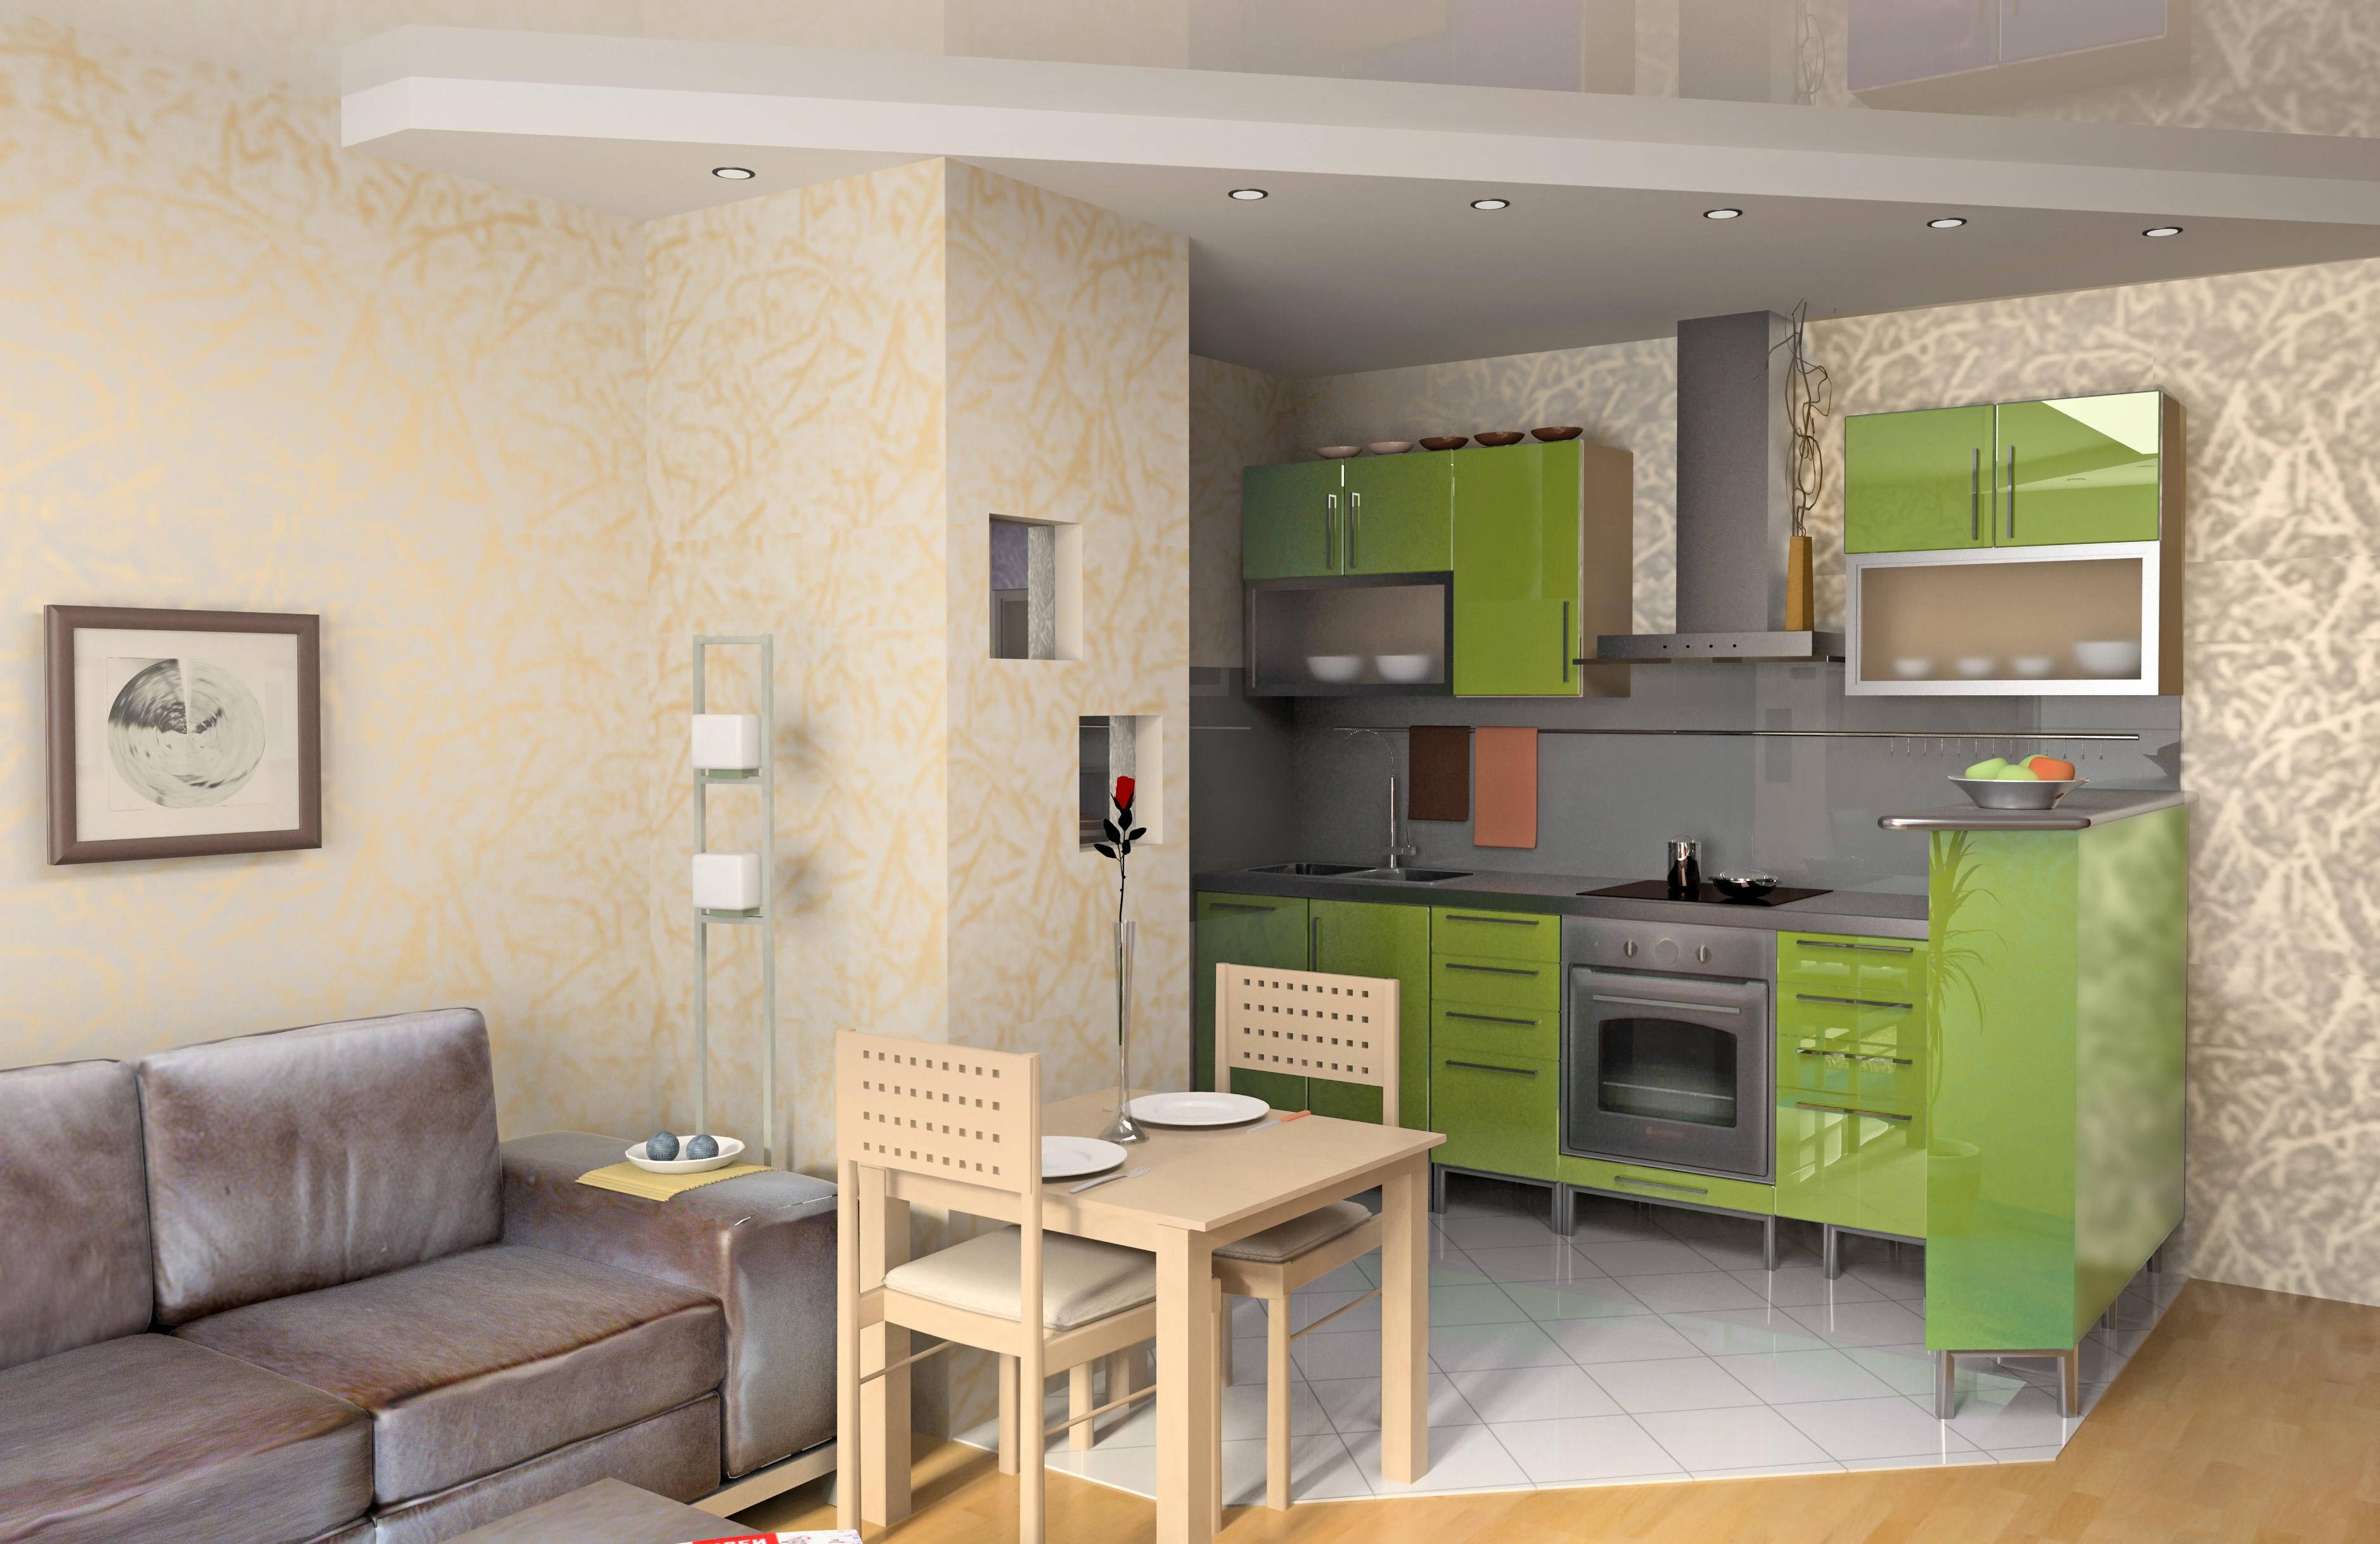 Дизайн гостиной с кухней в квартире 18 кв м